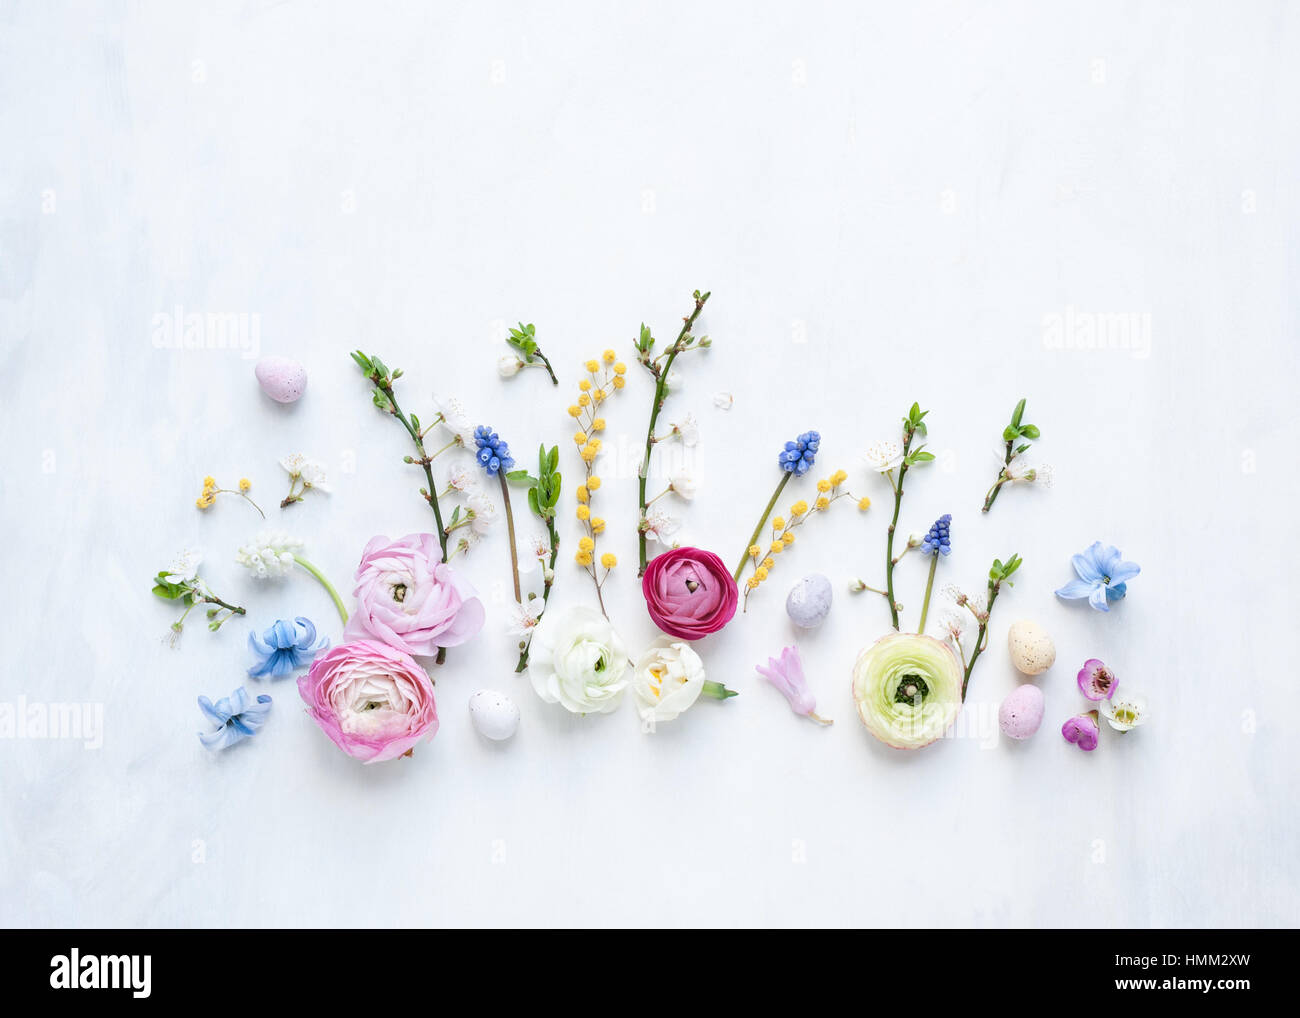 Piso todavía ponen la vida de primavera de flores frescas y mini huevos dispuestos en una fila de pintado de color blanco y gris como telón de fondo la luz natural Foto de stock